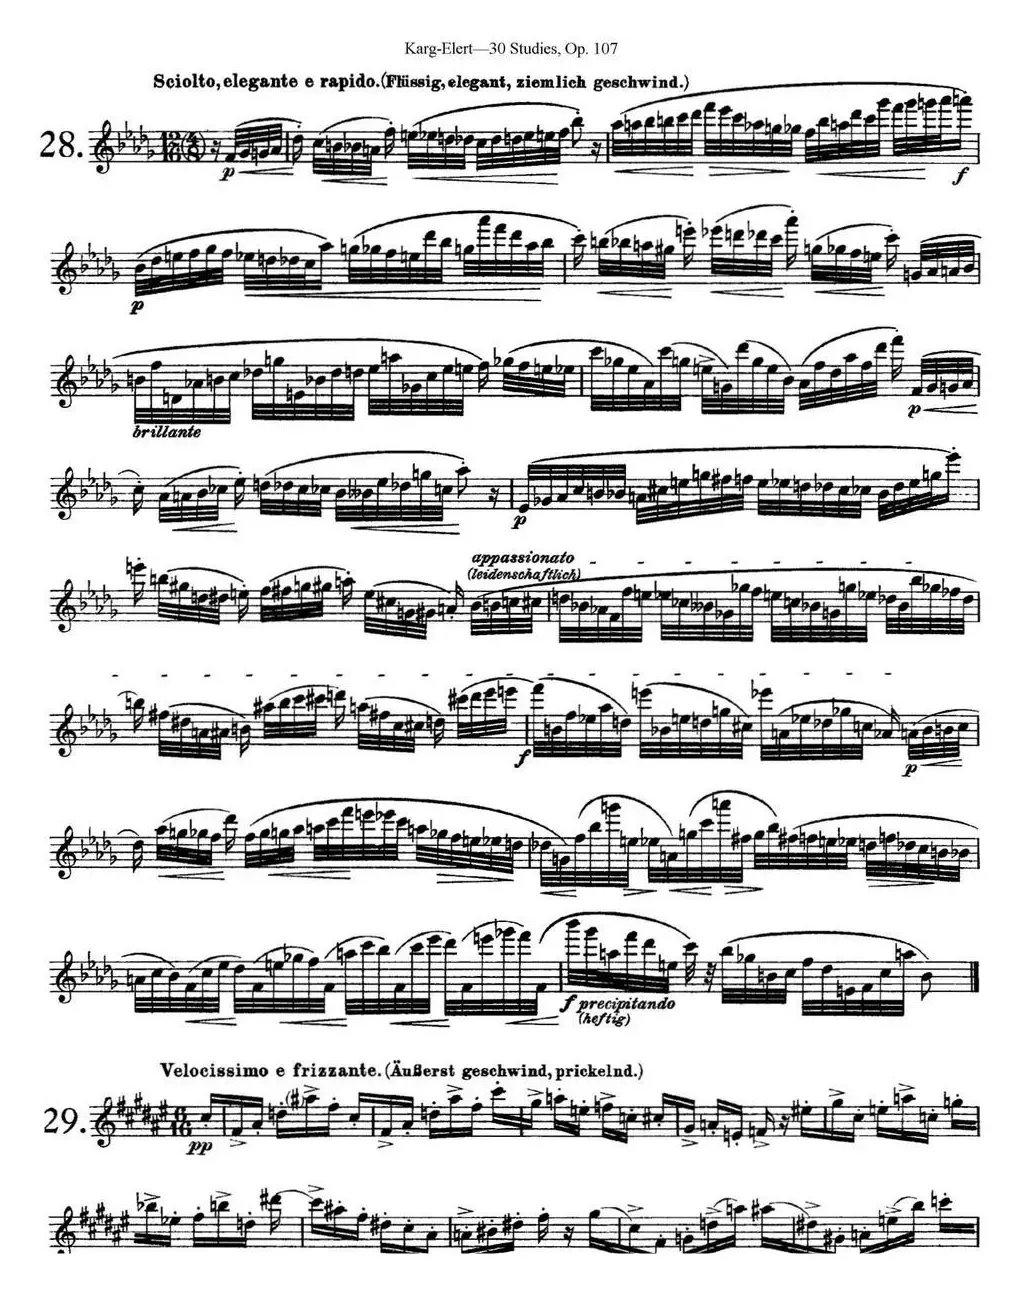 卡-伊勒特30首长笛练习曲Op.107（NO.28-NO.30）